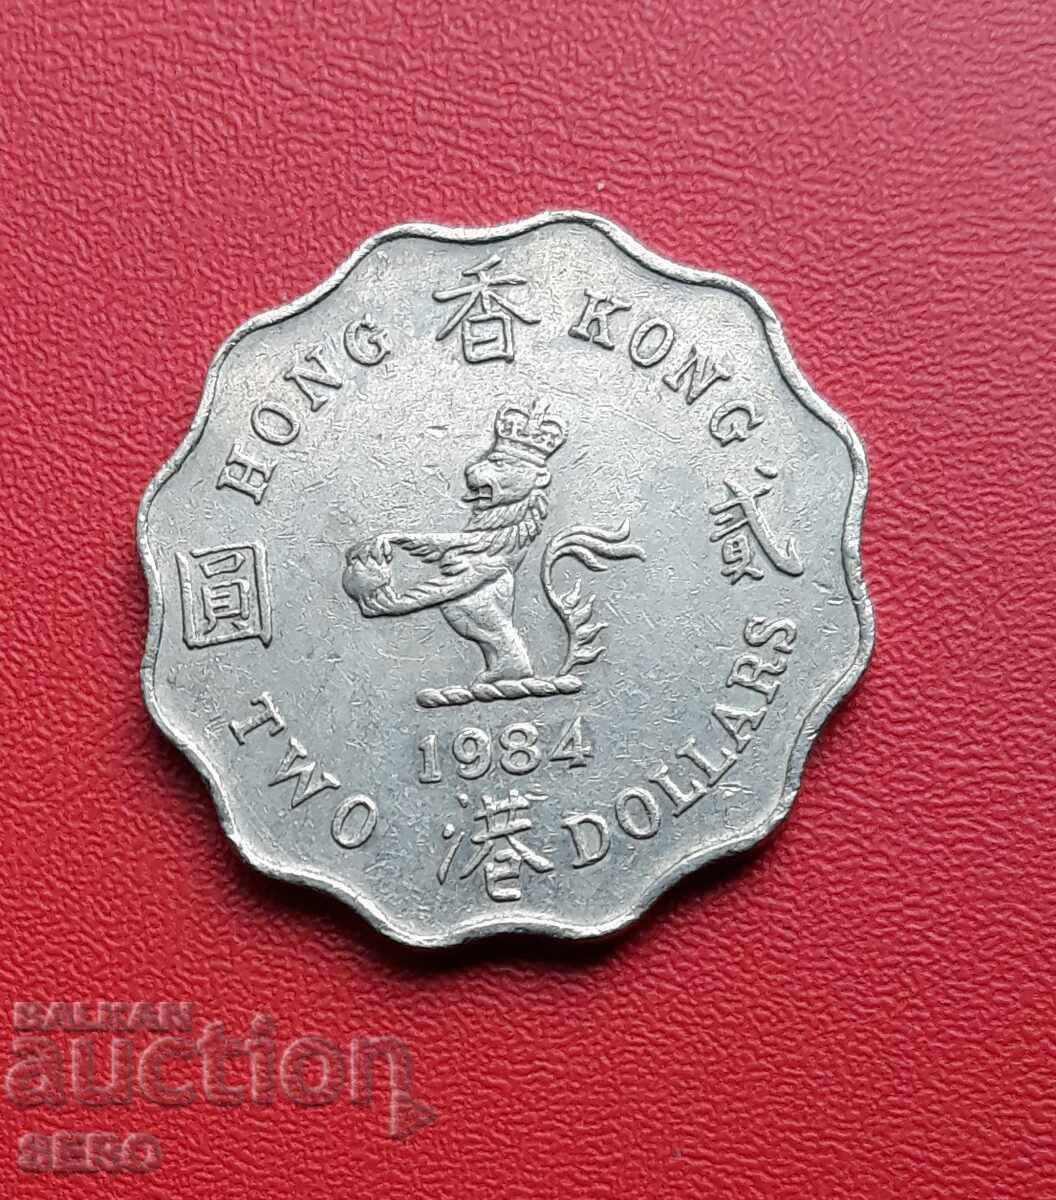 Hong Kong - 2 dollars 1984